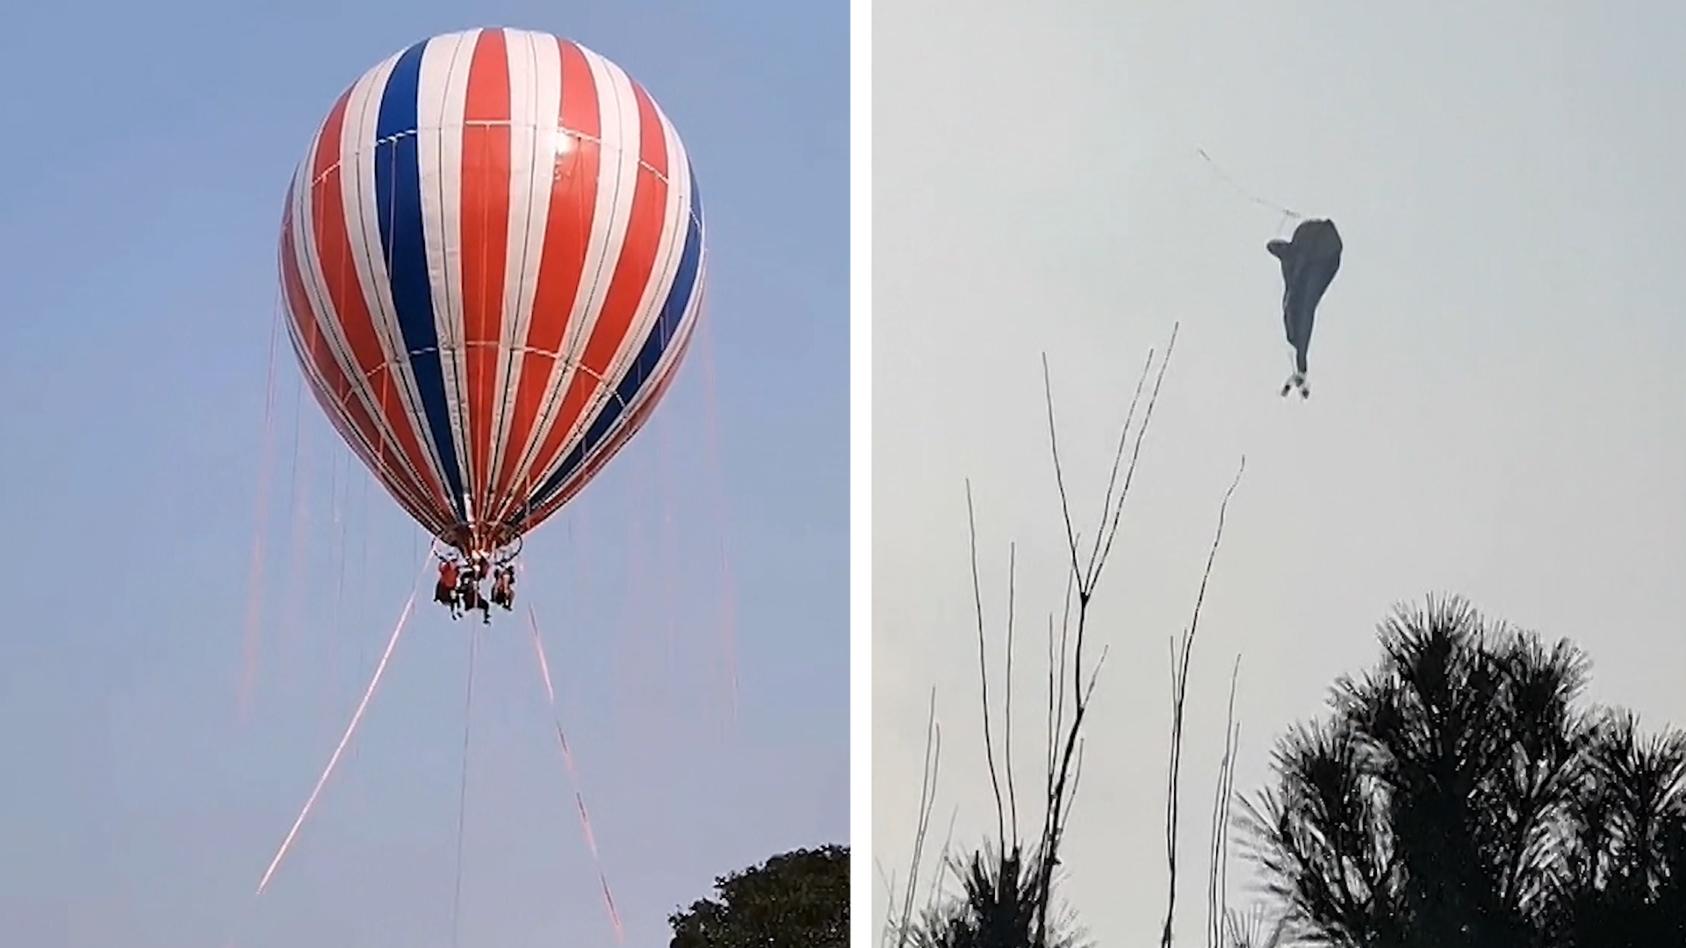 Heißluftballon platzt in der Luft – eine Person tot! Plötzlich reißen die Stahlseile